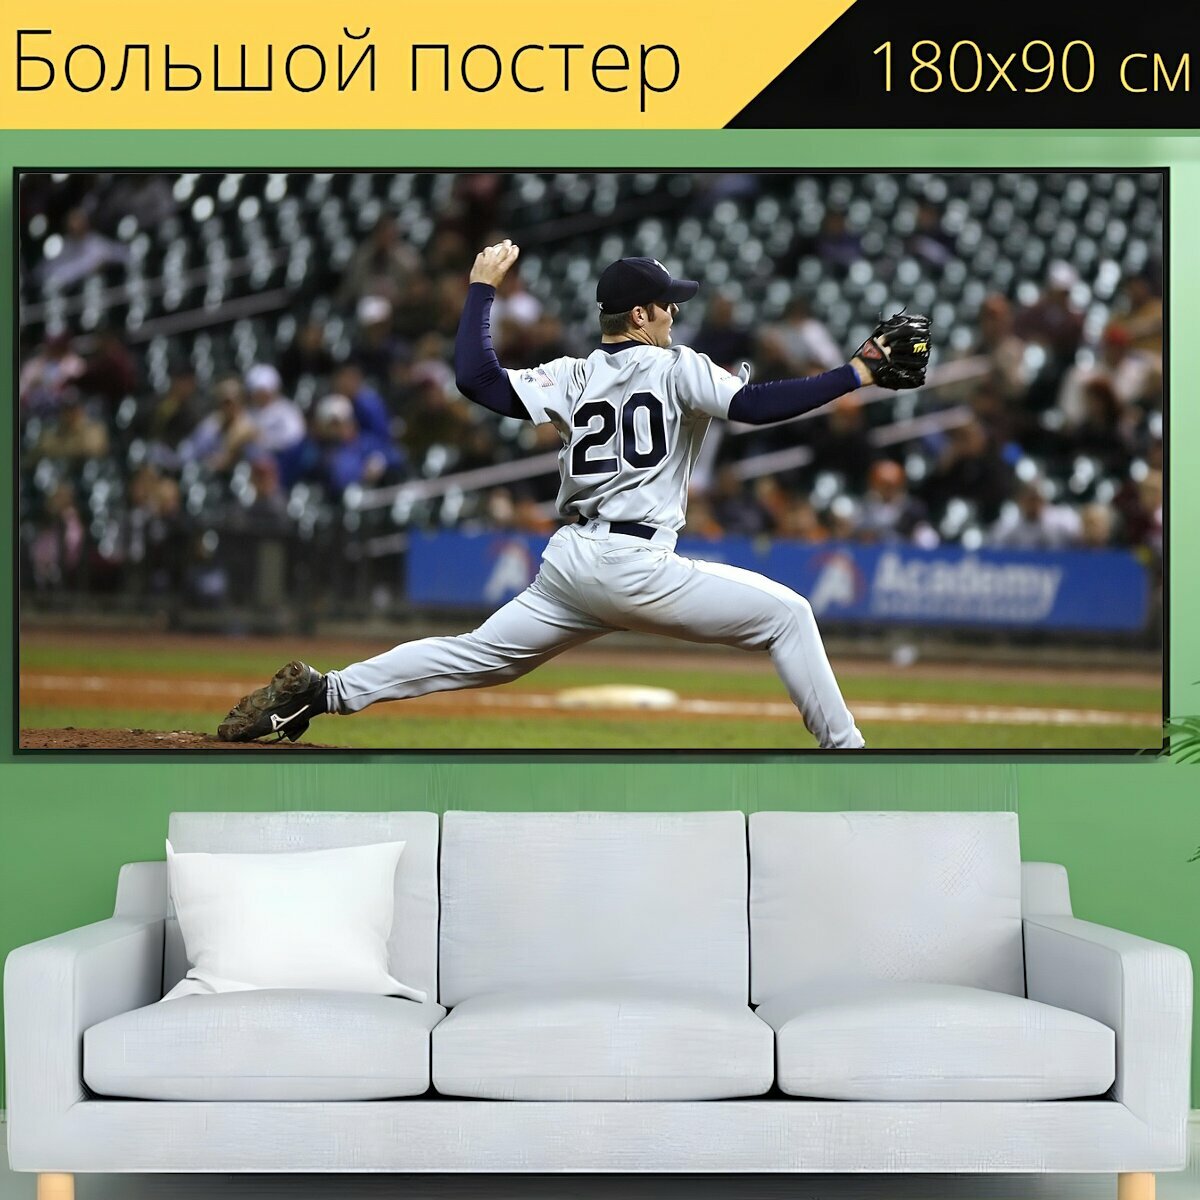 Большой постер "Бейсбол игрок кувшин" 180 x 90 см. для интерьера